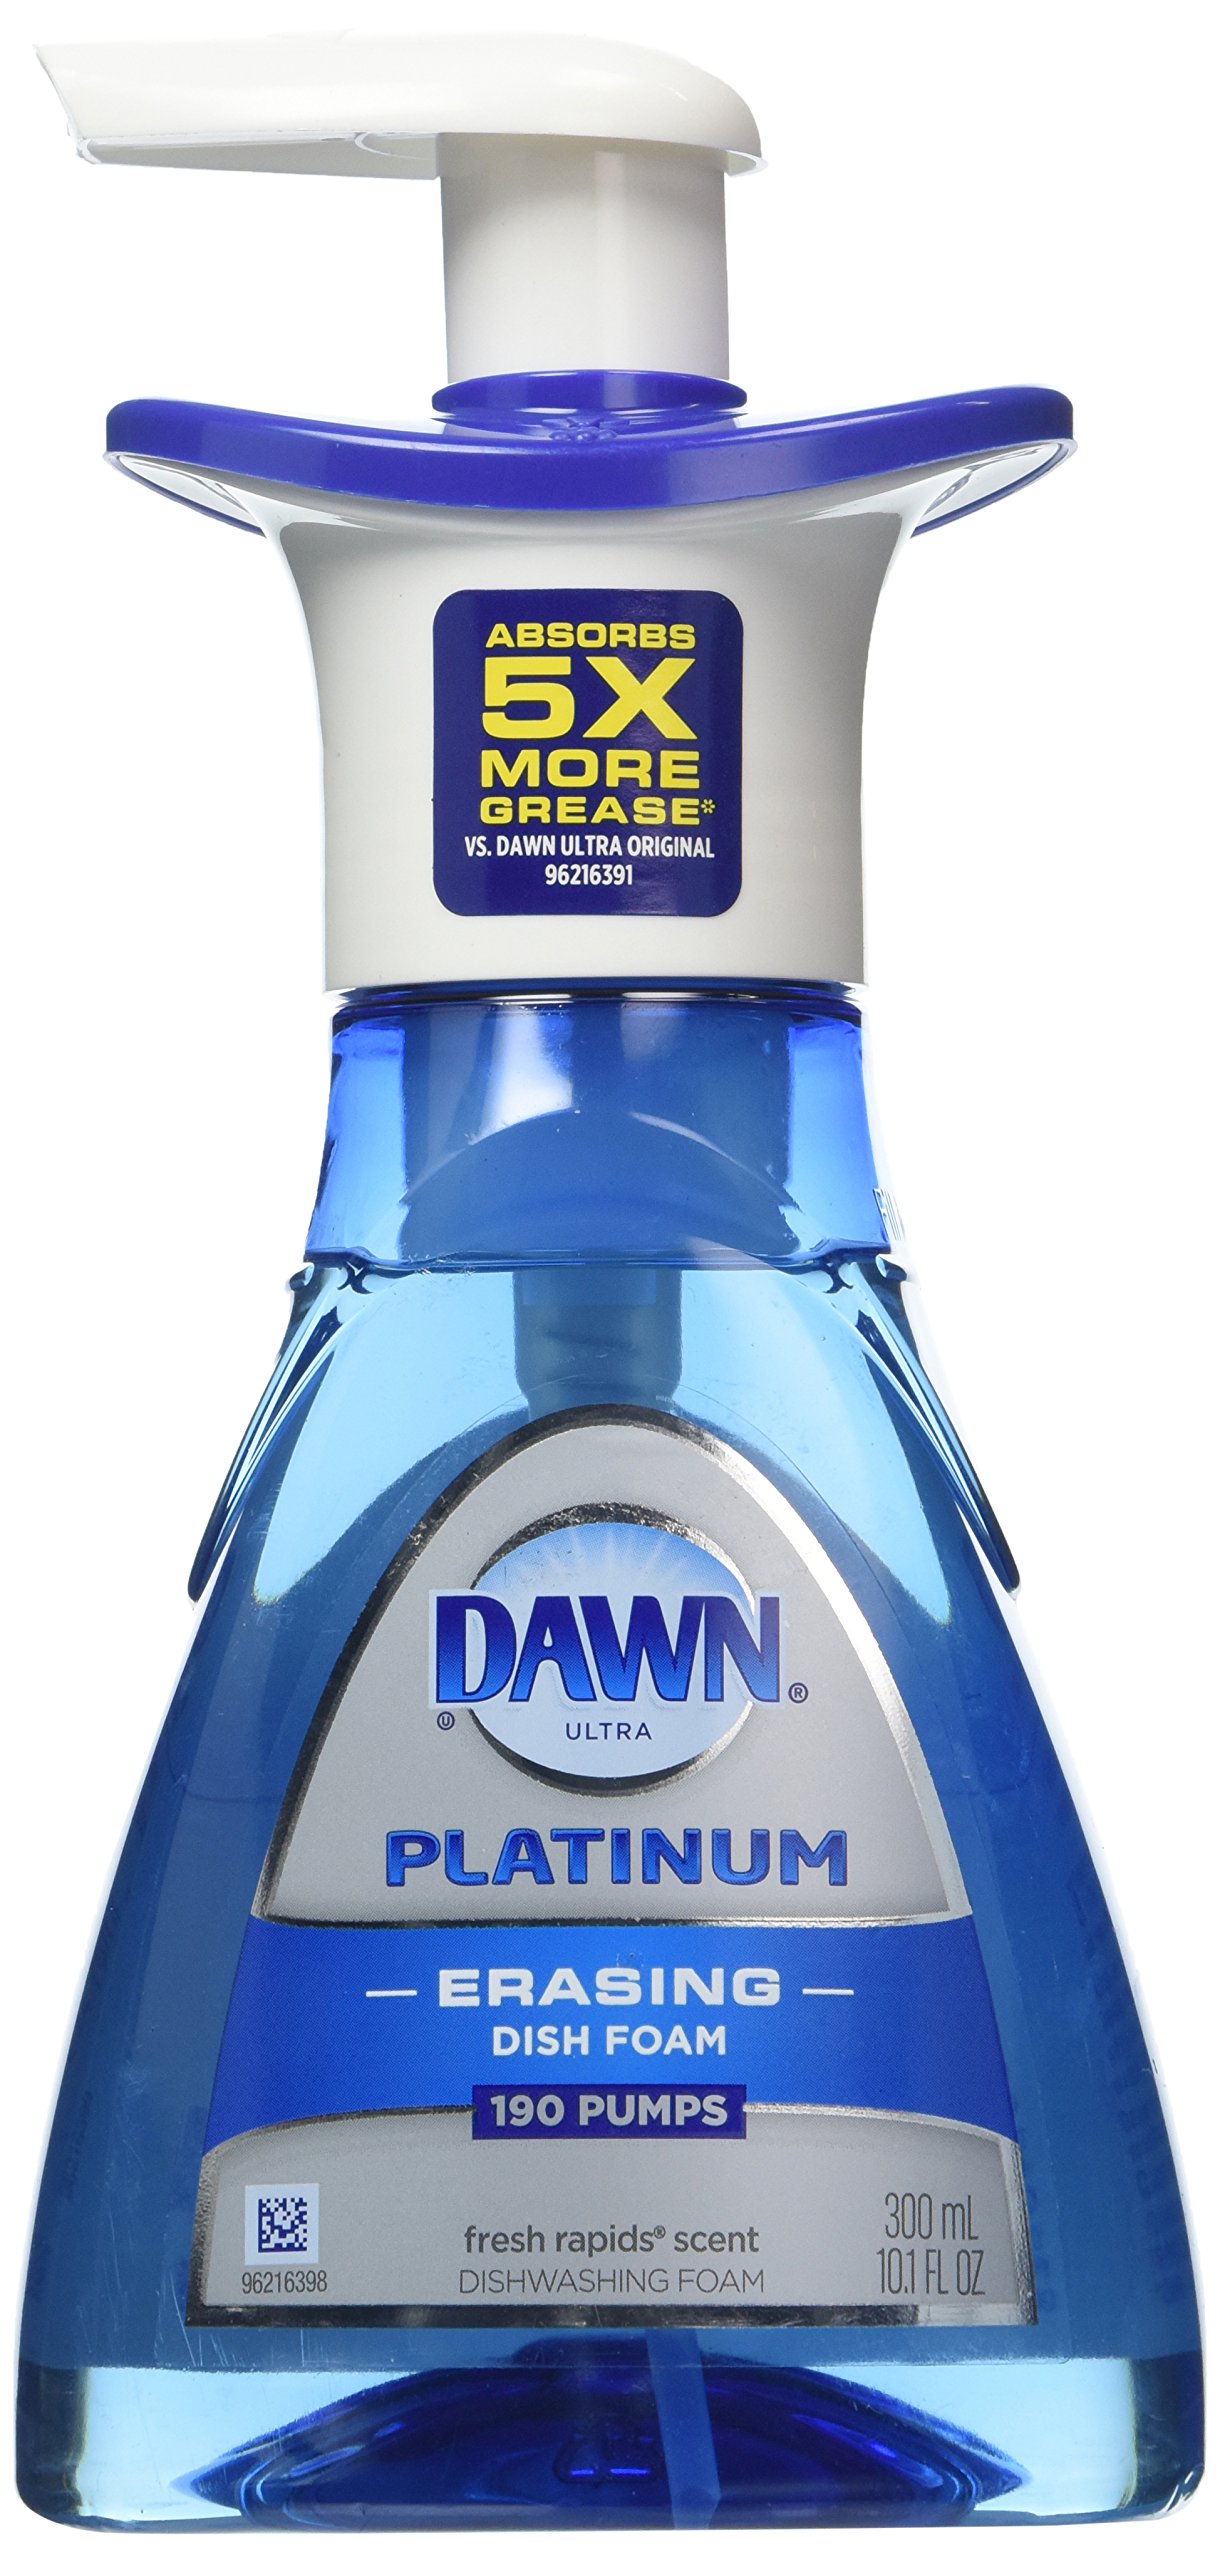 10-Ounce Dawn Platinum Dishwashing Foam $1.91 + Free Shipping w/ Prime or on $25+